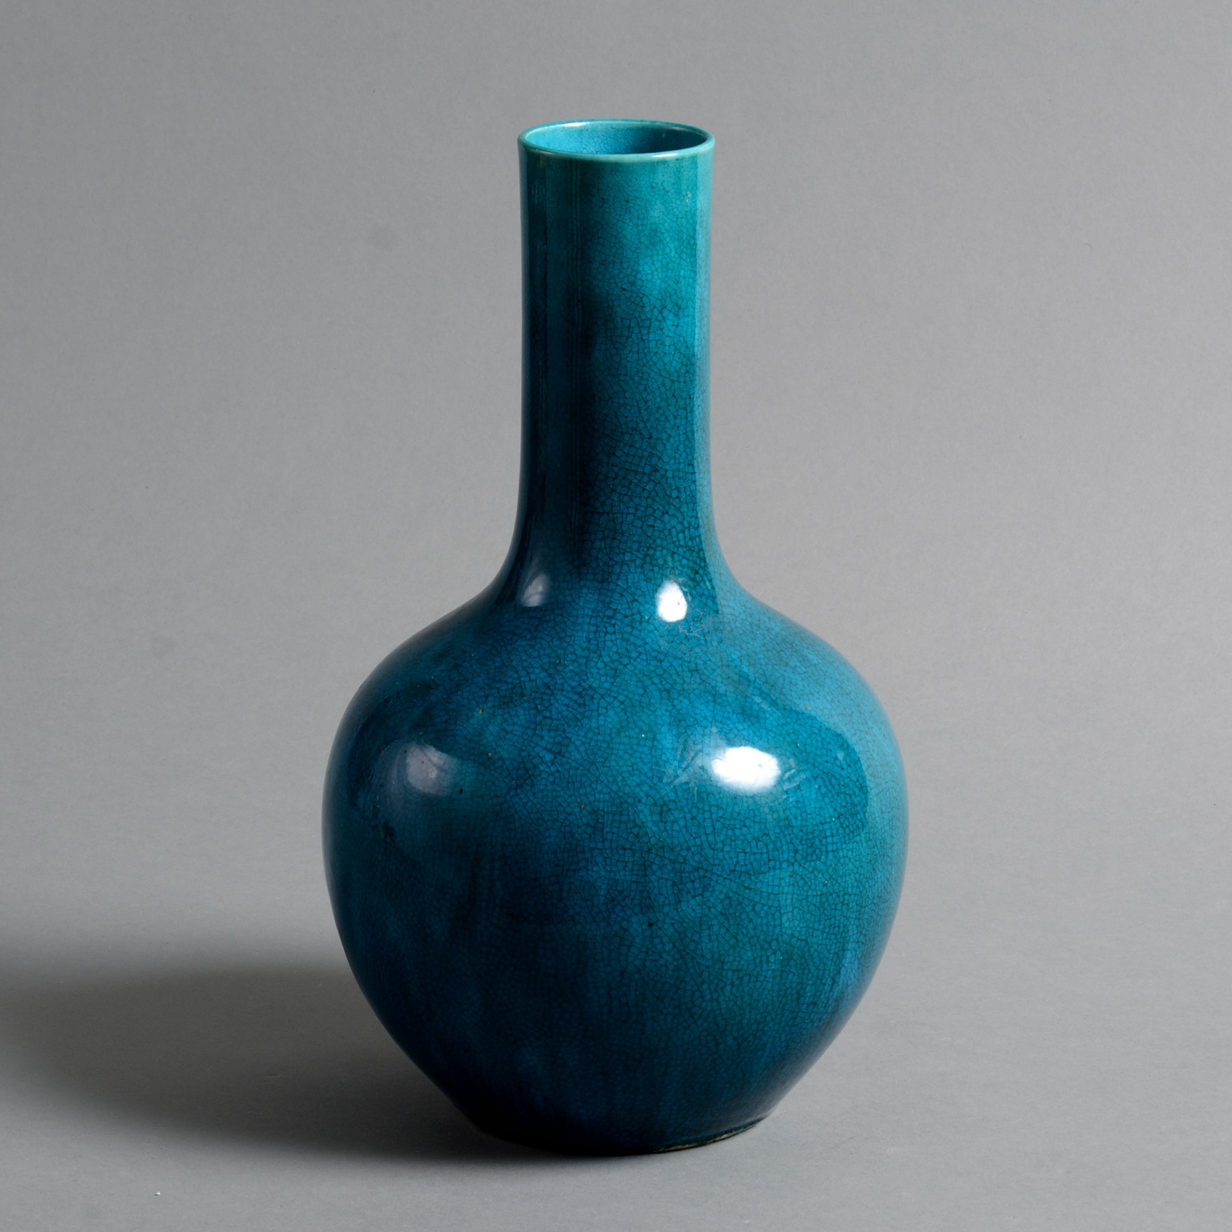 A 19th century qing dynasty turquoise glazed porcelain bottle vase